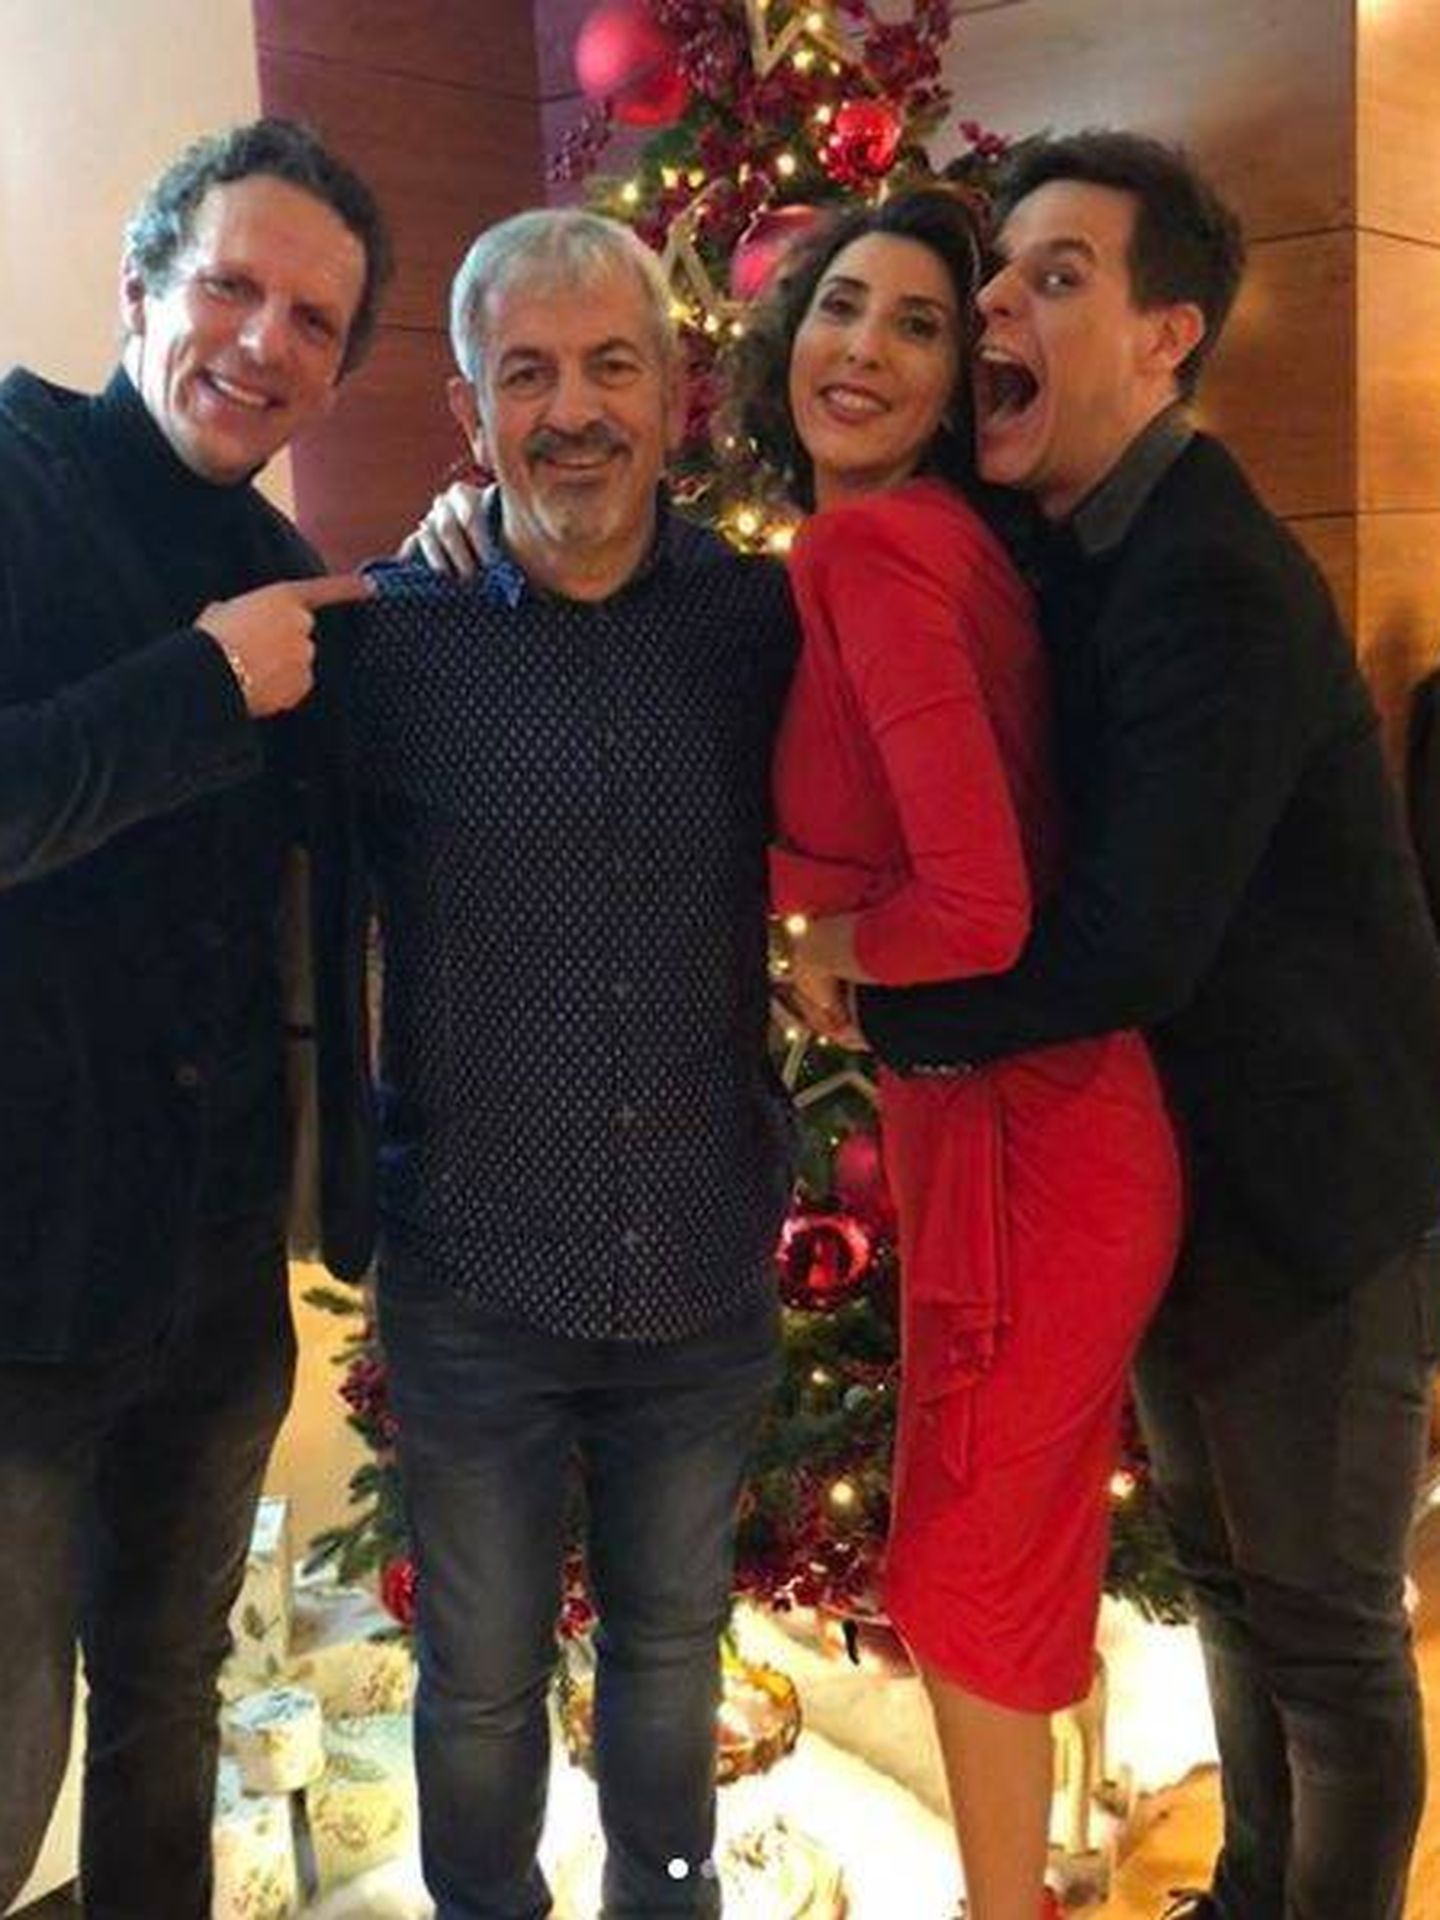 Paz Padilla, Joaquín Prat, Carlos Sobera y Christian Gálvez en la cena de Navidad.